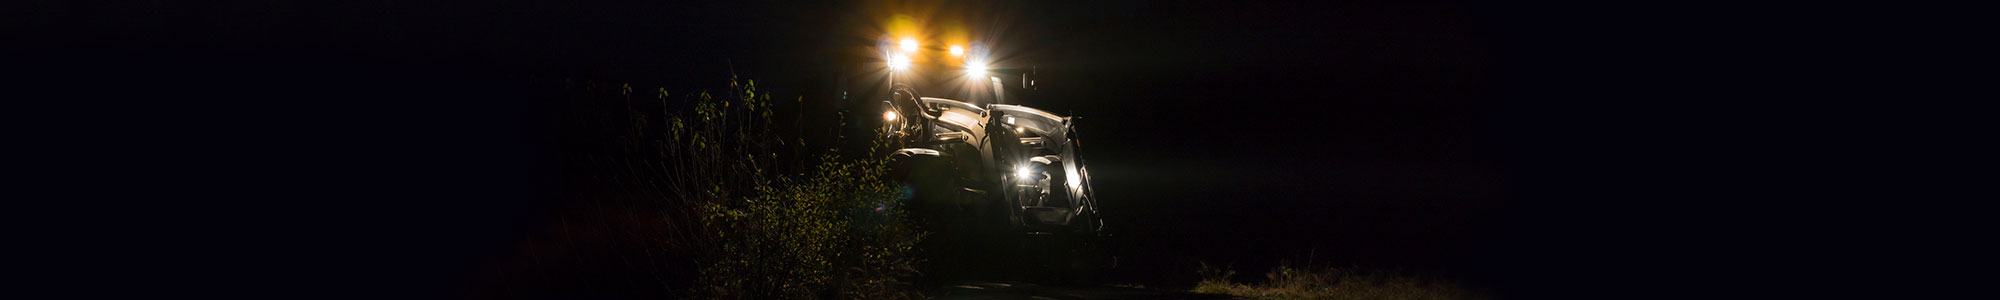 Traktor kjører i mørket med kraftige ekstralys